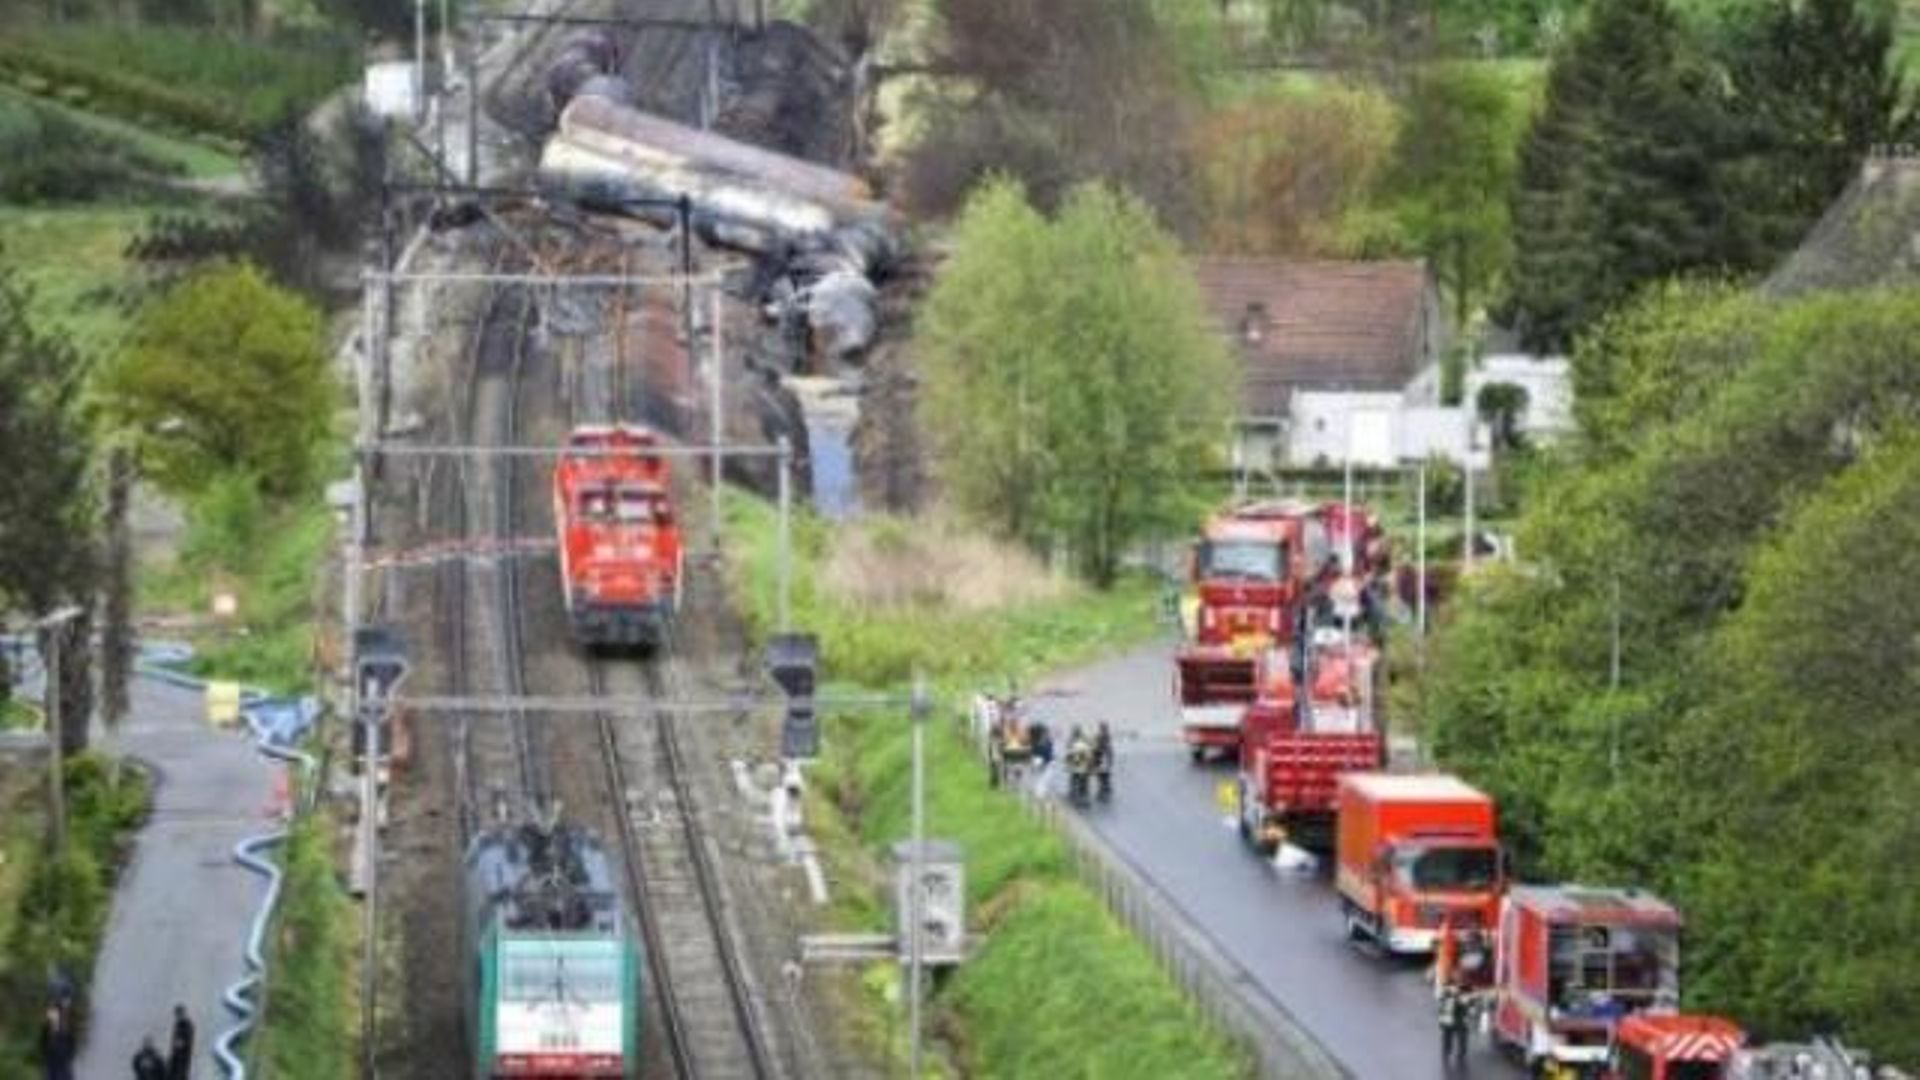 Accident de train à Schellebelle - tous les blessés ont quitté l'hôpital